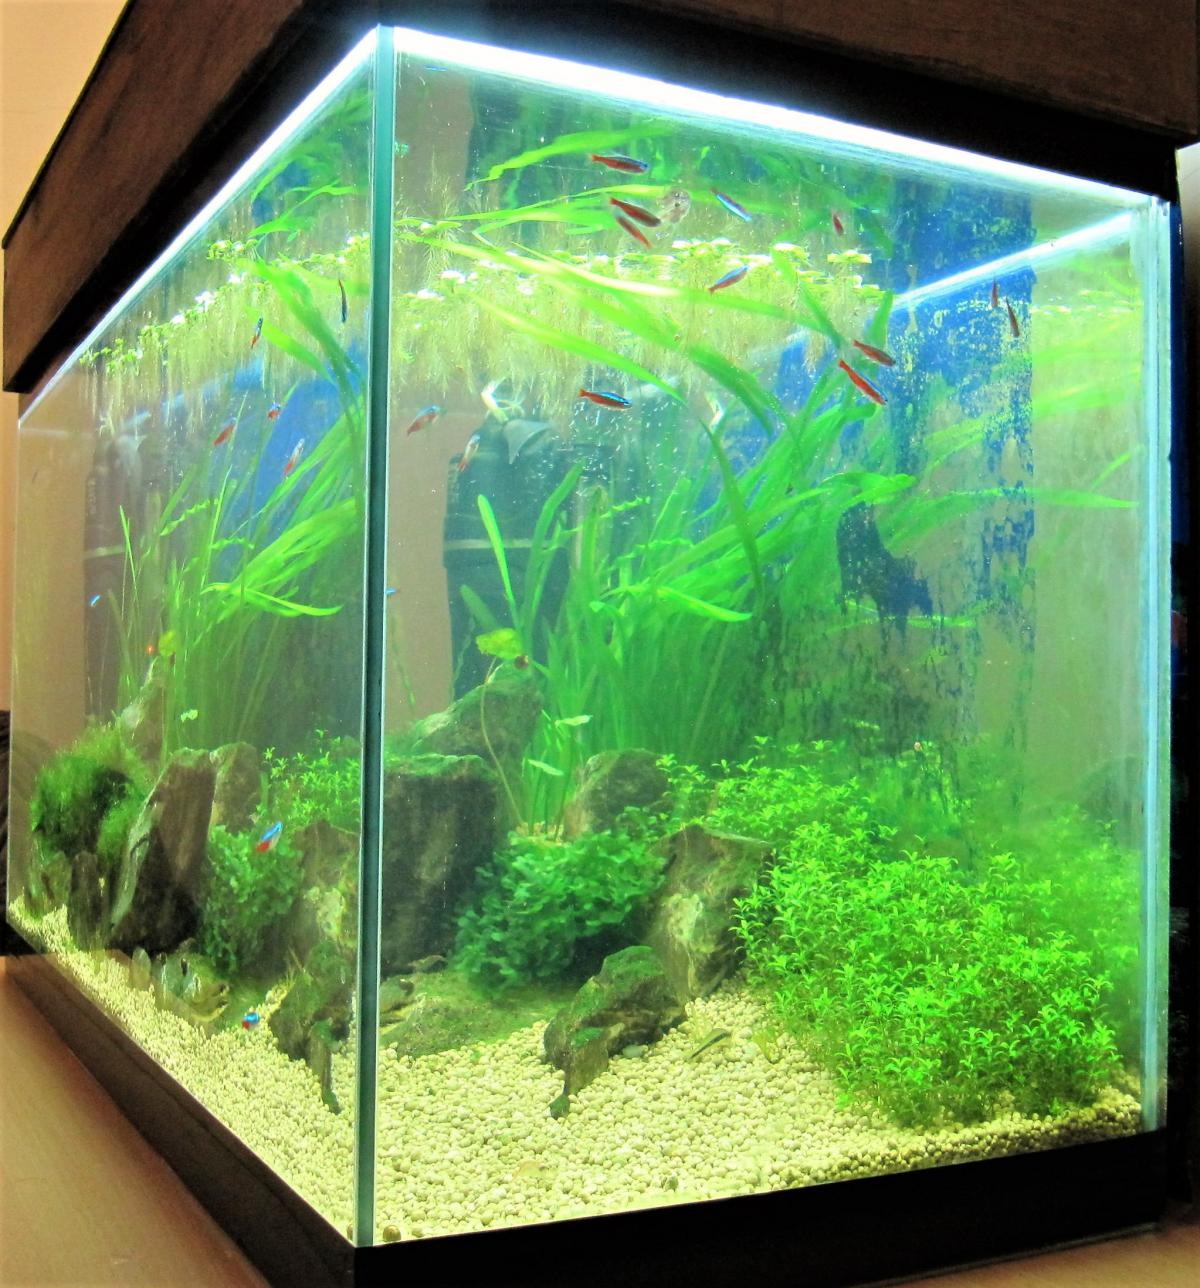 Почему аквариум покрылся. Грязный аквариум. Запуск аквариума. Зелень на стекле аквариума. Аквариум с покрытым стеклом.